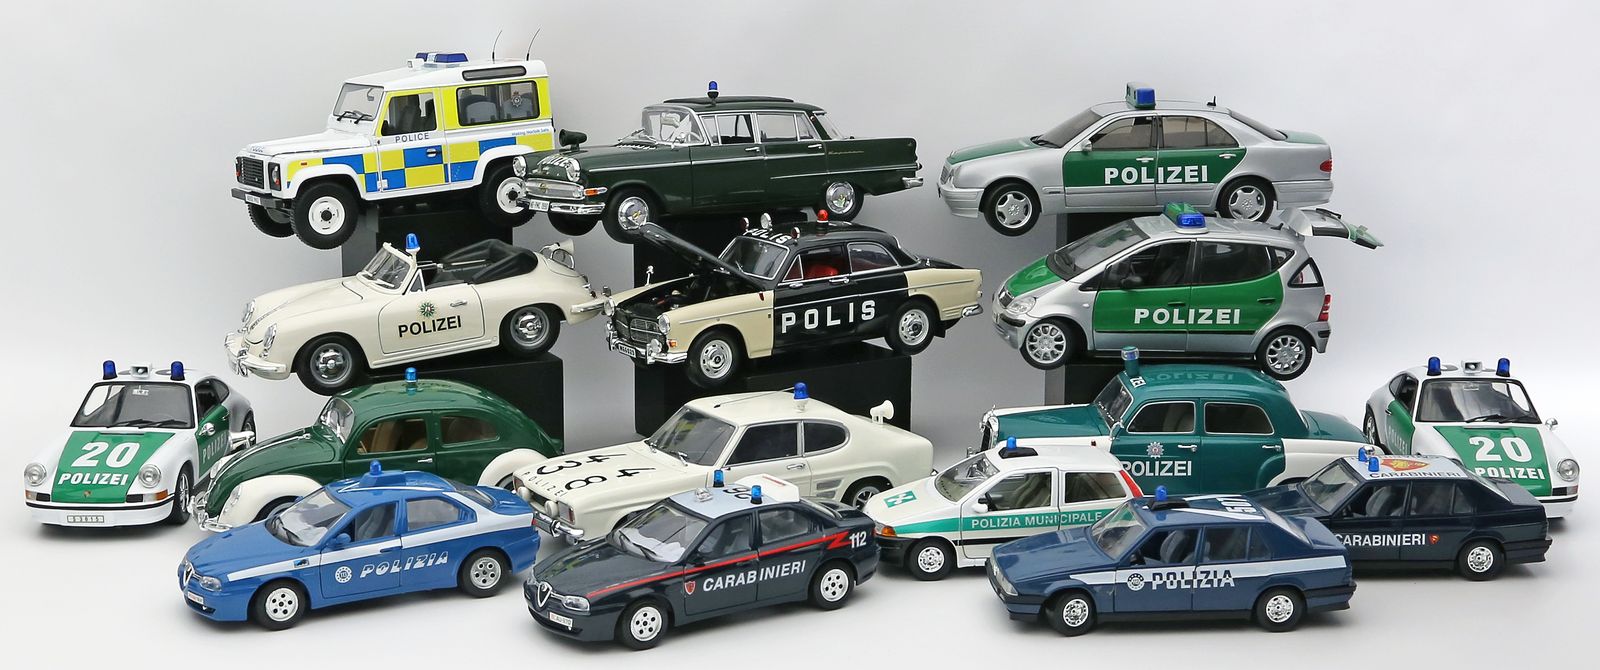 16 Polizeiautos.